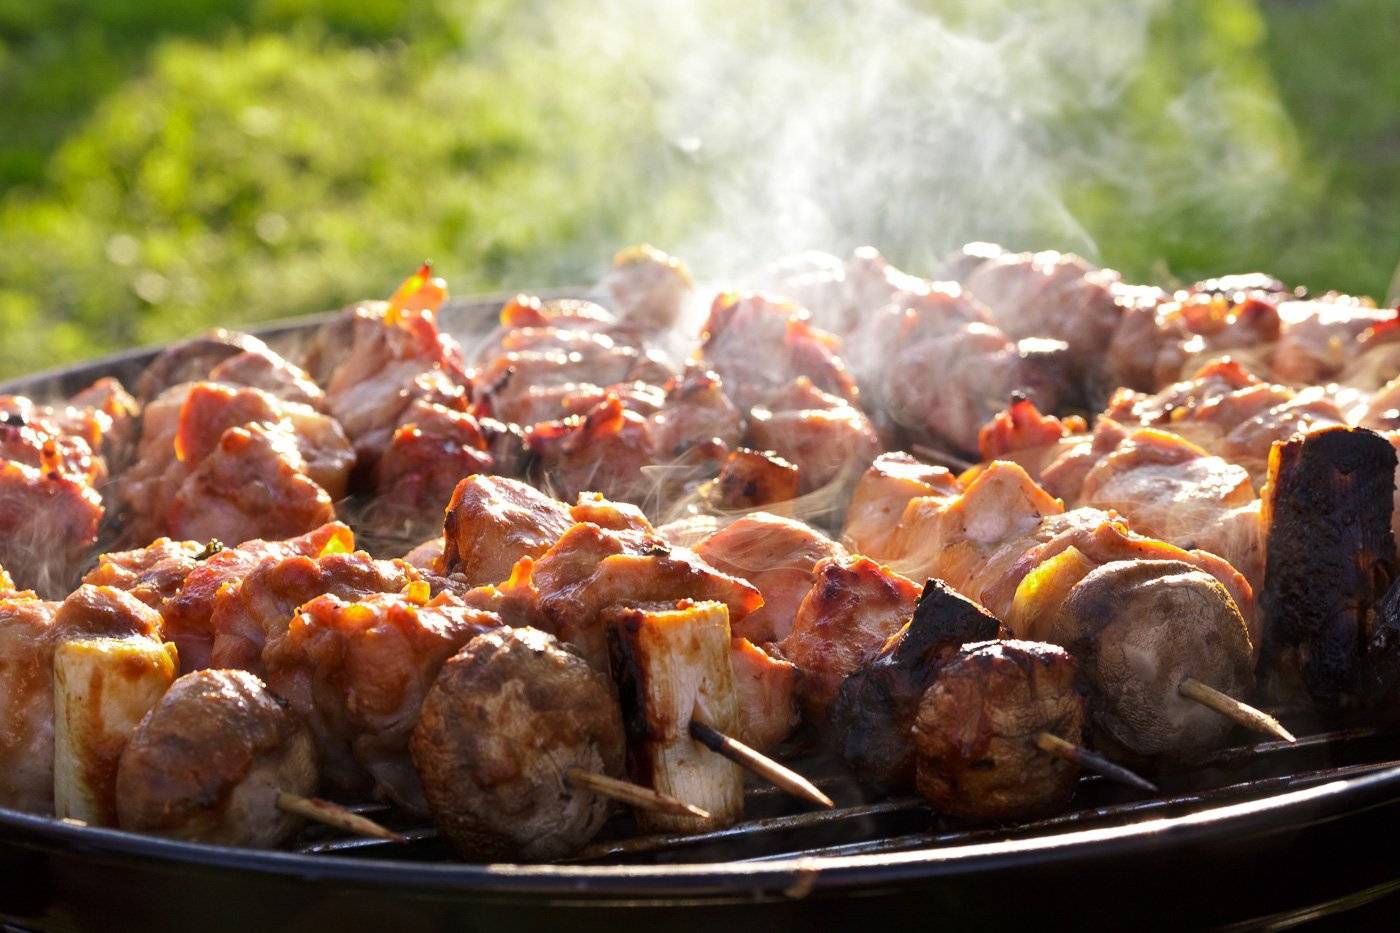 Сочный шашлык из свинины - 7 самых вкусных маринадов, чтобы мясо было мягким